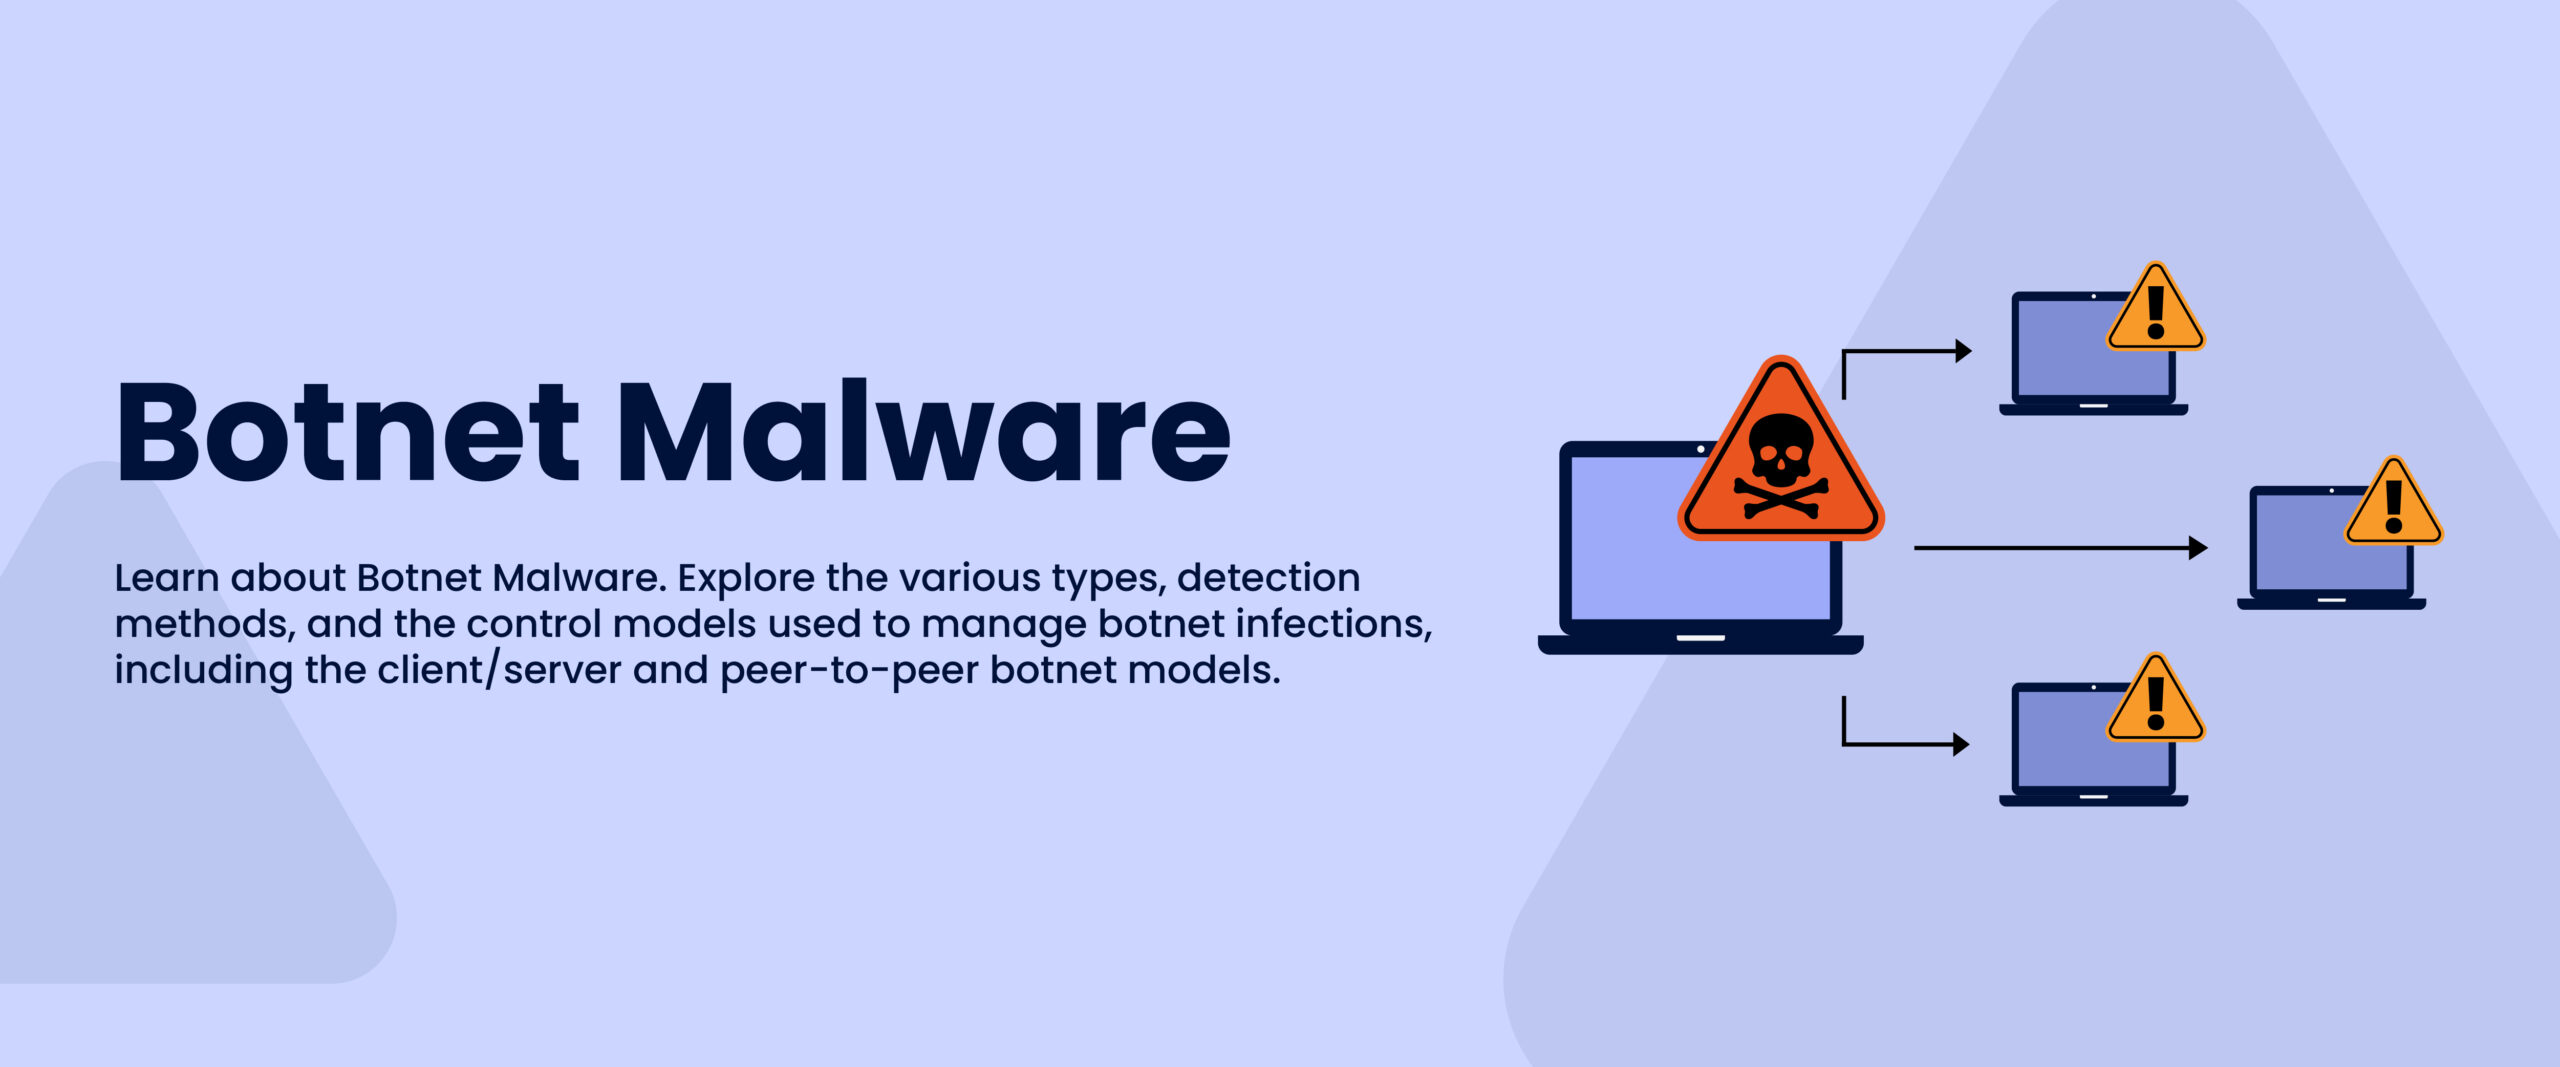 Botnet Malware